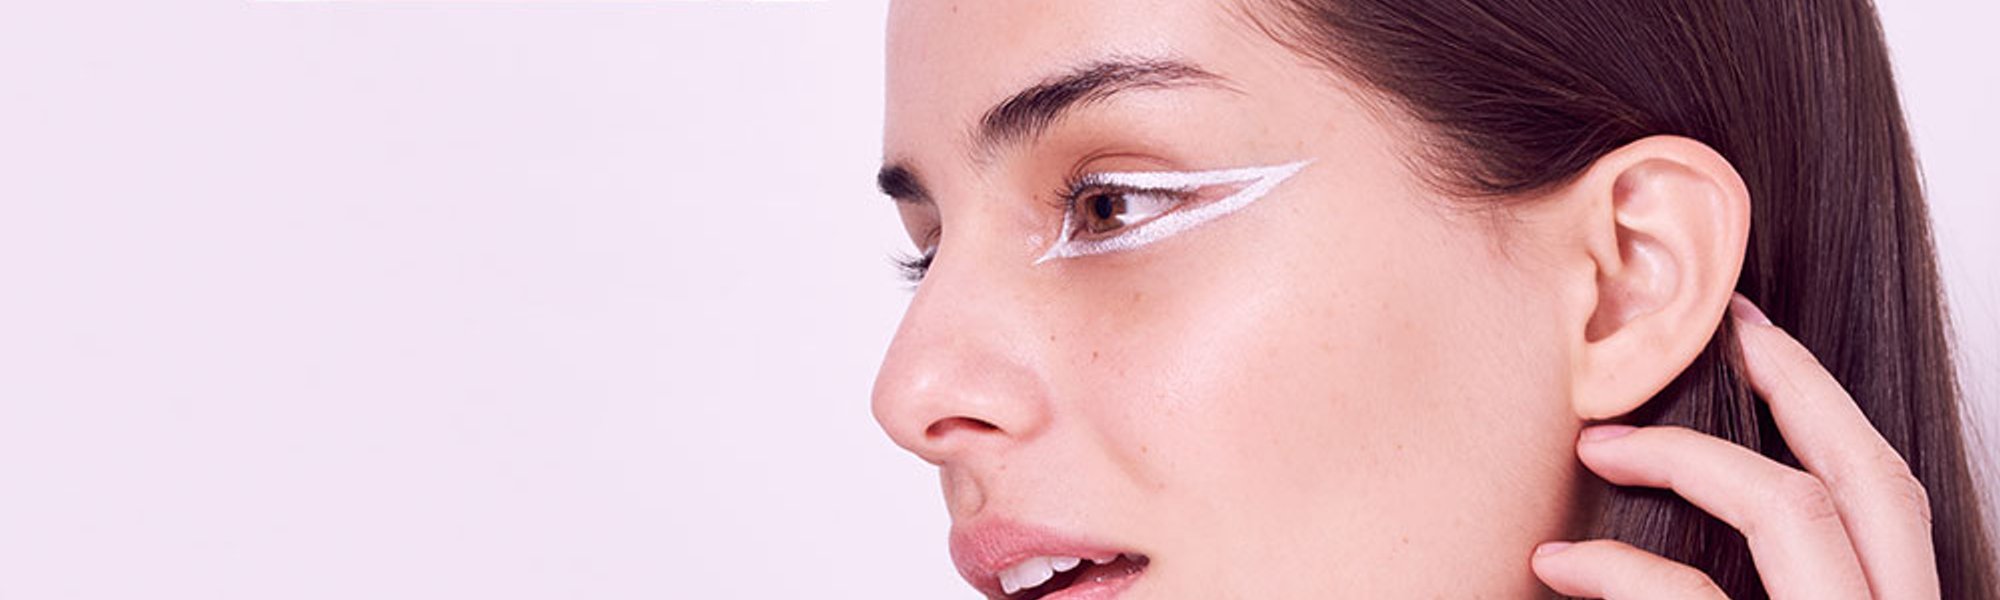 Cómo agrandar los ojos con maquillaje | L'Oréal Paris